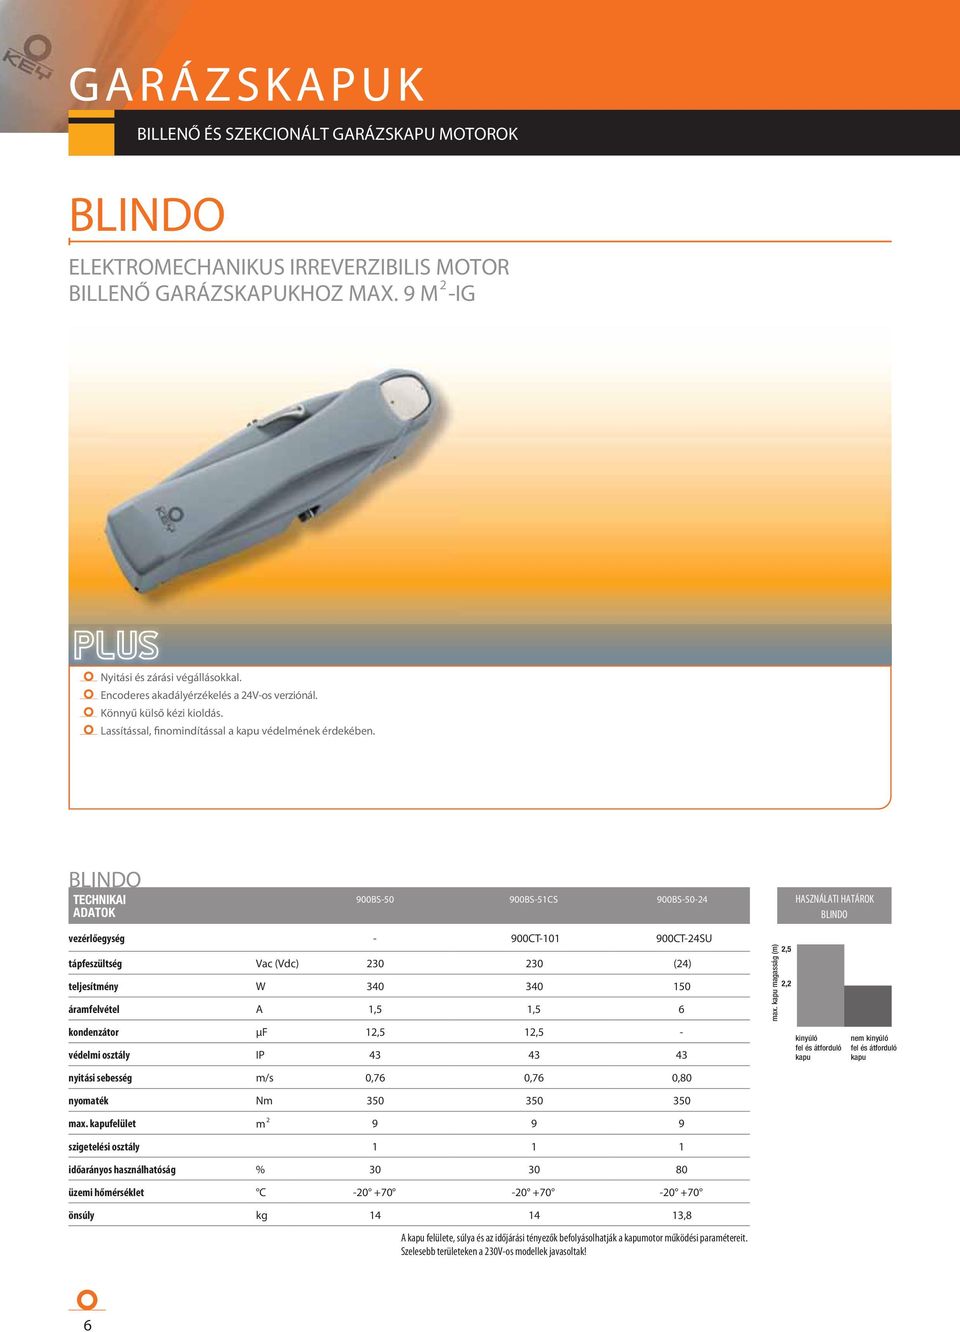 BLINDO TECHNIKAI ADATOK vezérlőegység tápfeszültség teljesítmény áramfelvétel kondenzátor védelmi osztály nyitási sebesség nyomaték max.